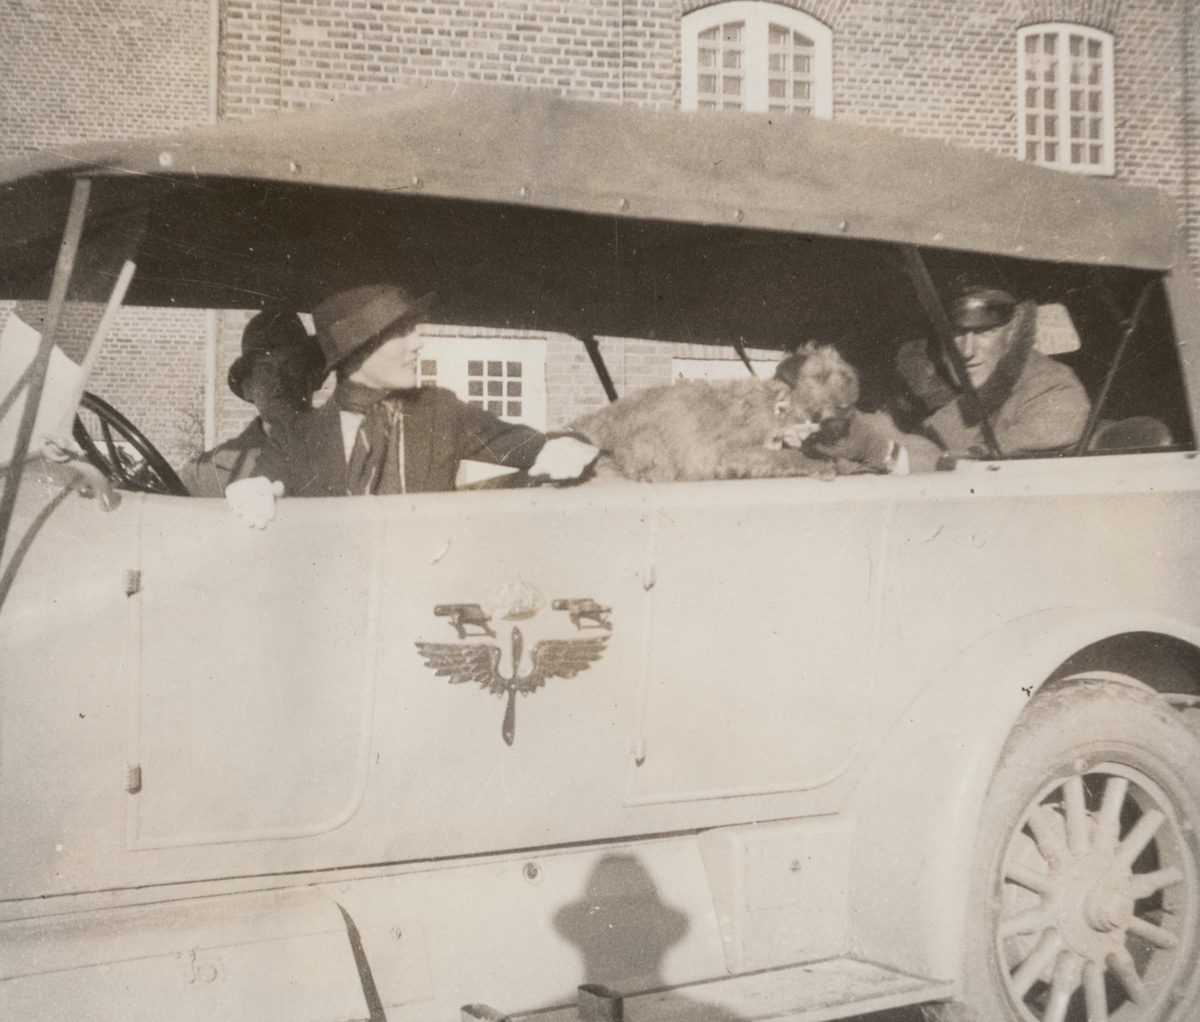 Tre personer och en hund sitter i Flygkompaniets bil, cirka 1925. Mannen till vänster är militären Birger Schyberg, mannen till höger är militären Nils Kindberg. Kvinnan heter Anna Linderstam.

Text i album: "Jan. 1925. Strängnäs. Qvisse. AL. BK. P-löv."